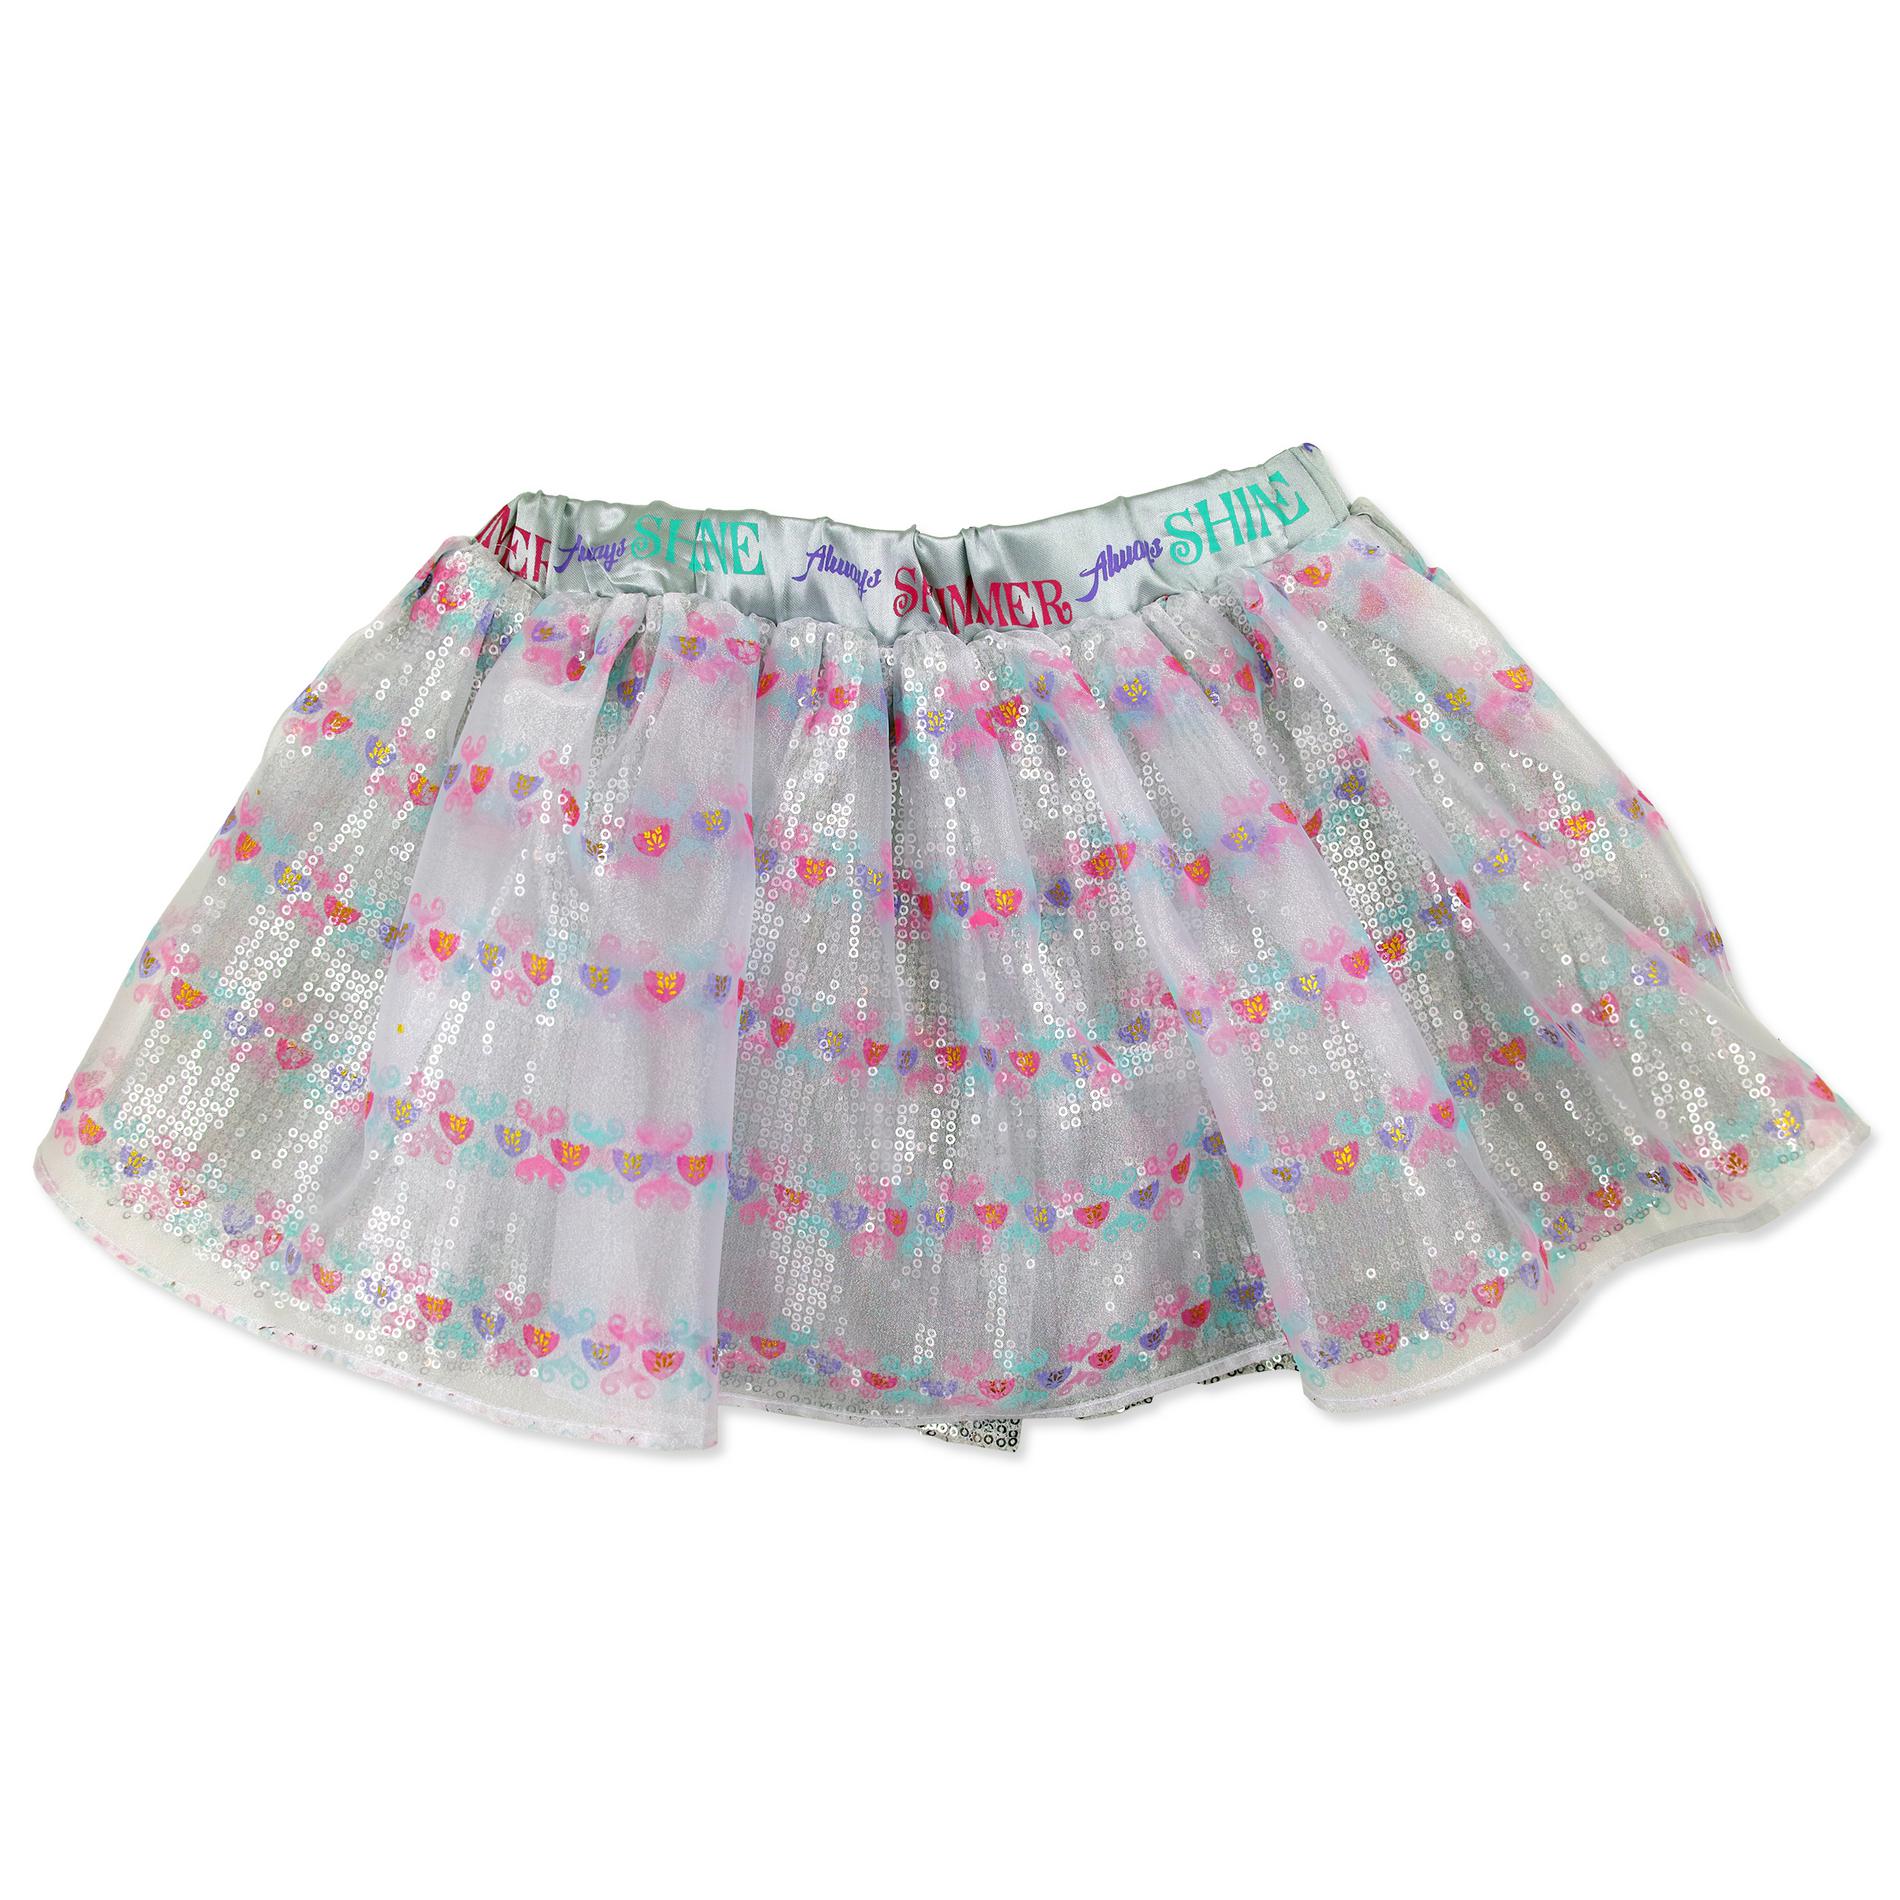 Nickelodeon Shimmer & Shine Girls' Tutu Skirt